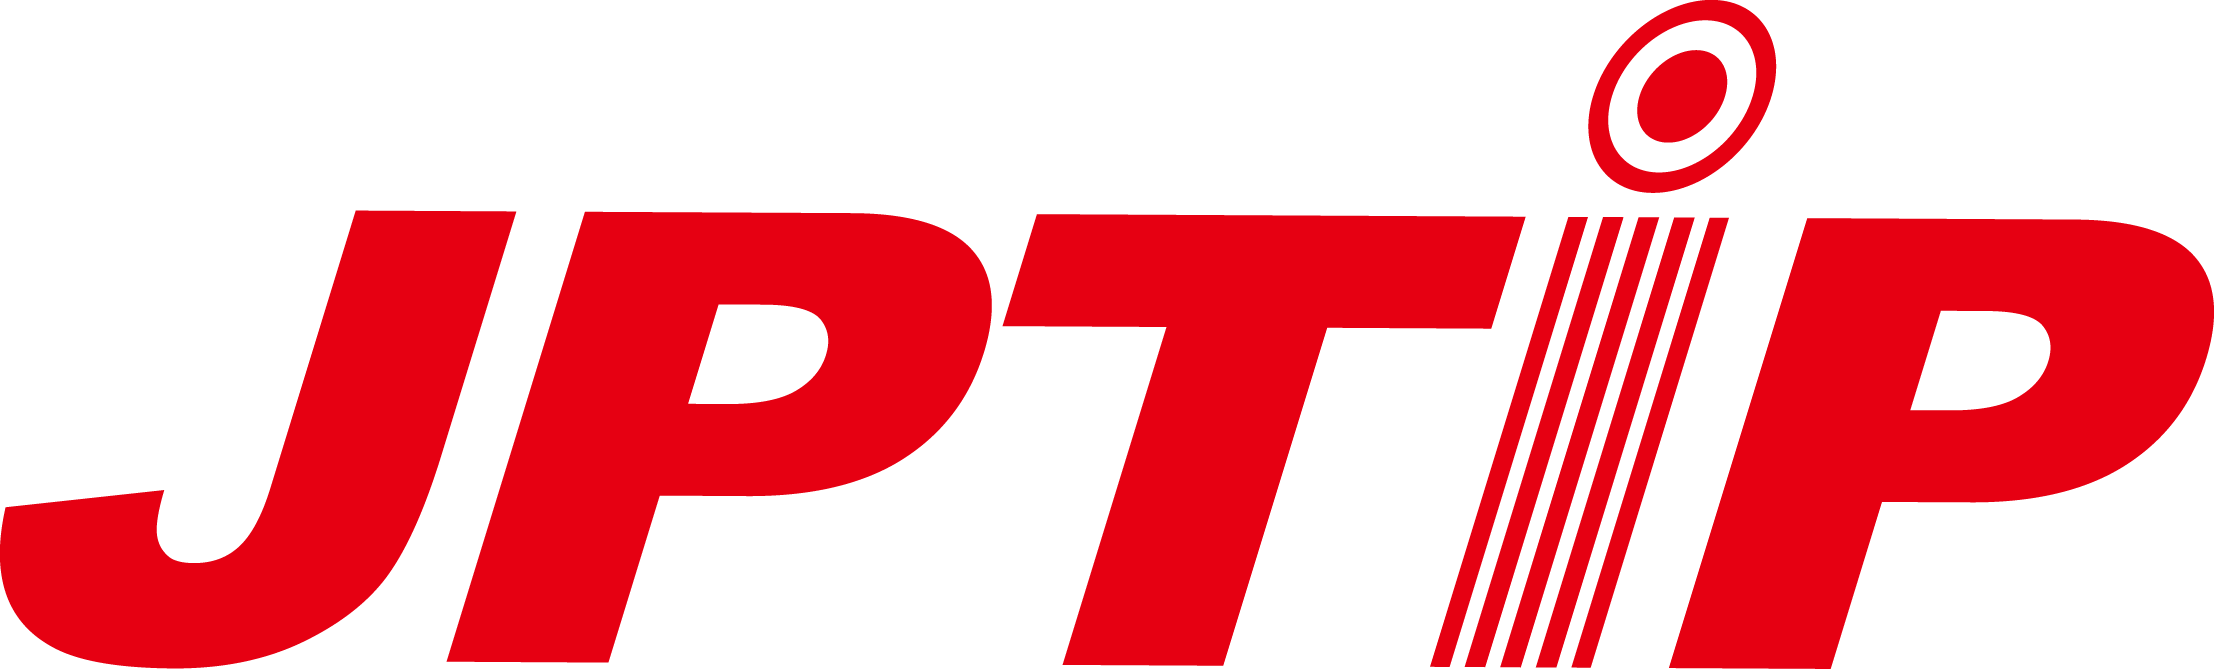 jptip logo